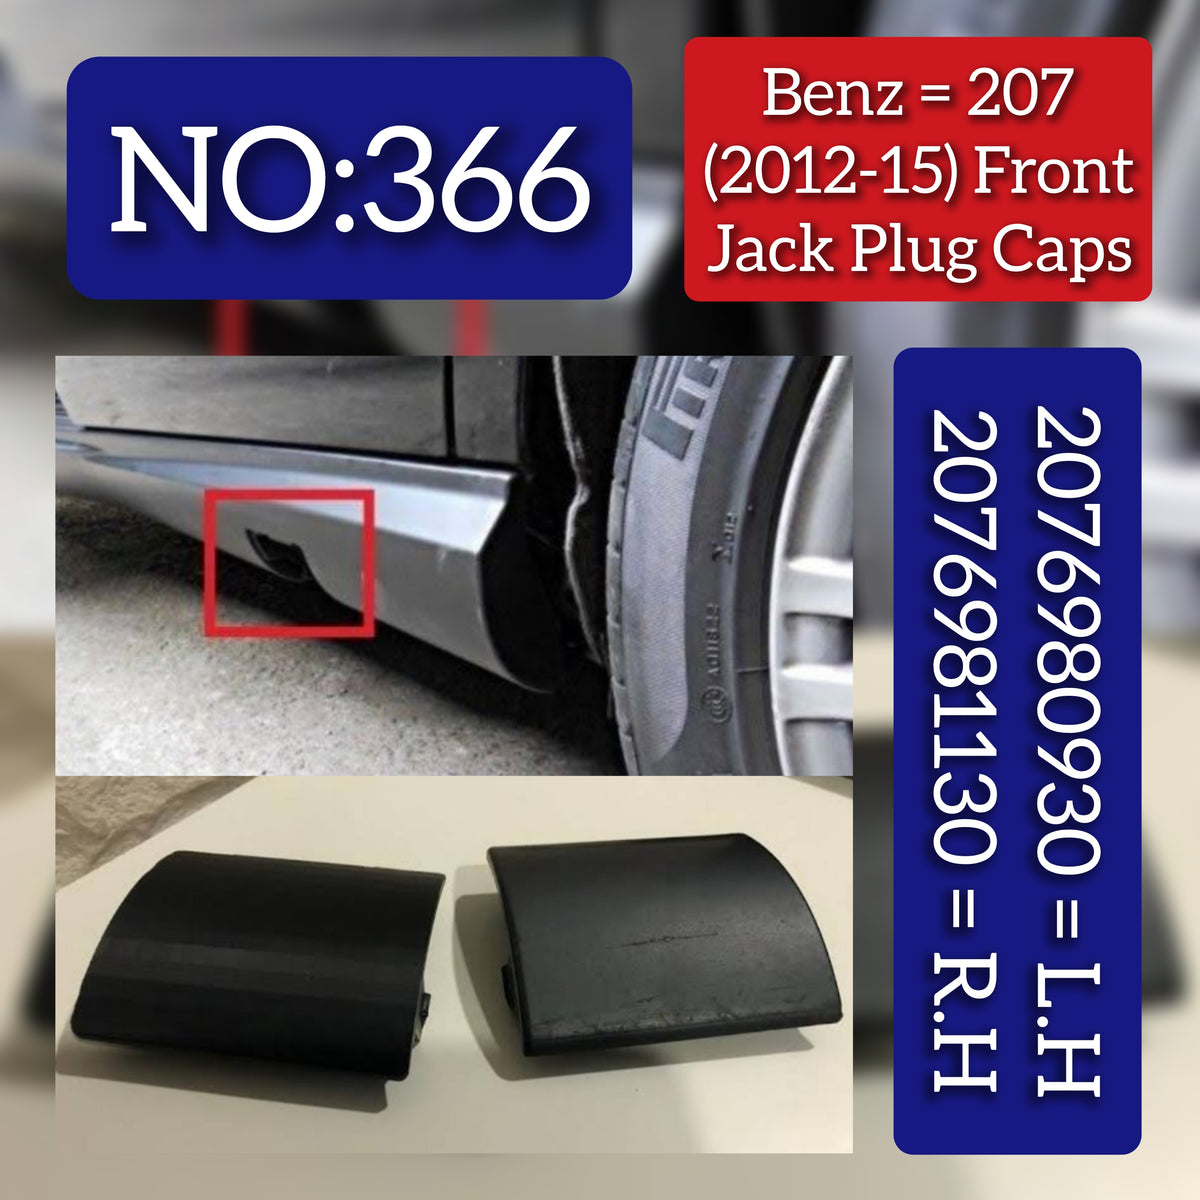 Benz = 207 (2012-15) Front Jack Plug Caps. Ref No 2076980930 = L.H,2076981130 = R.H Tag 366